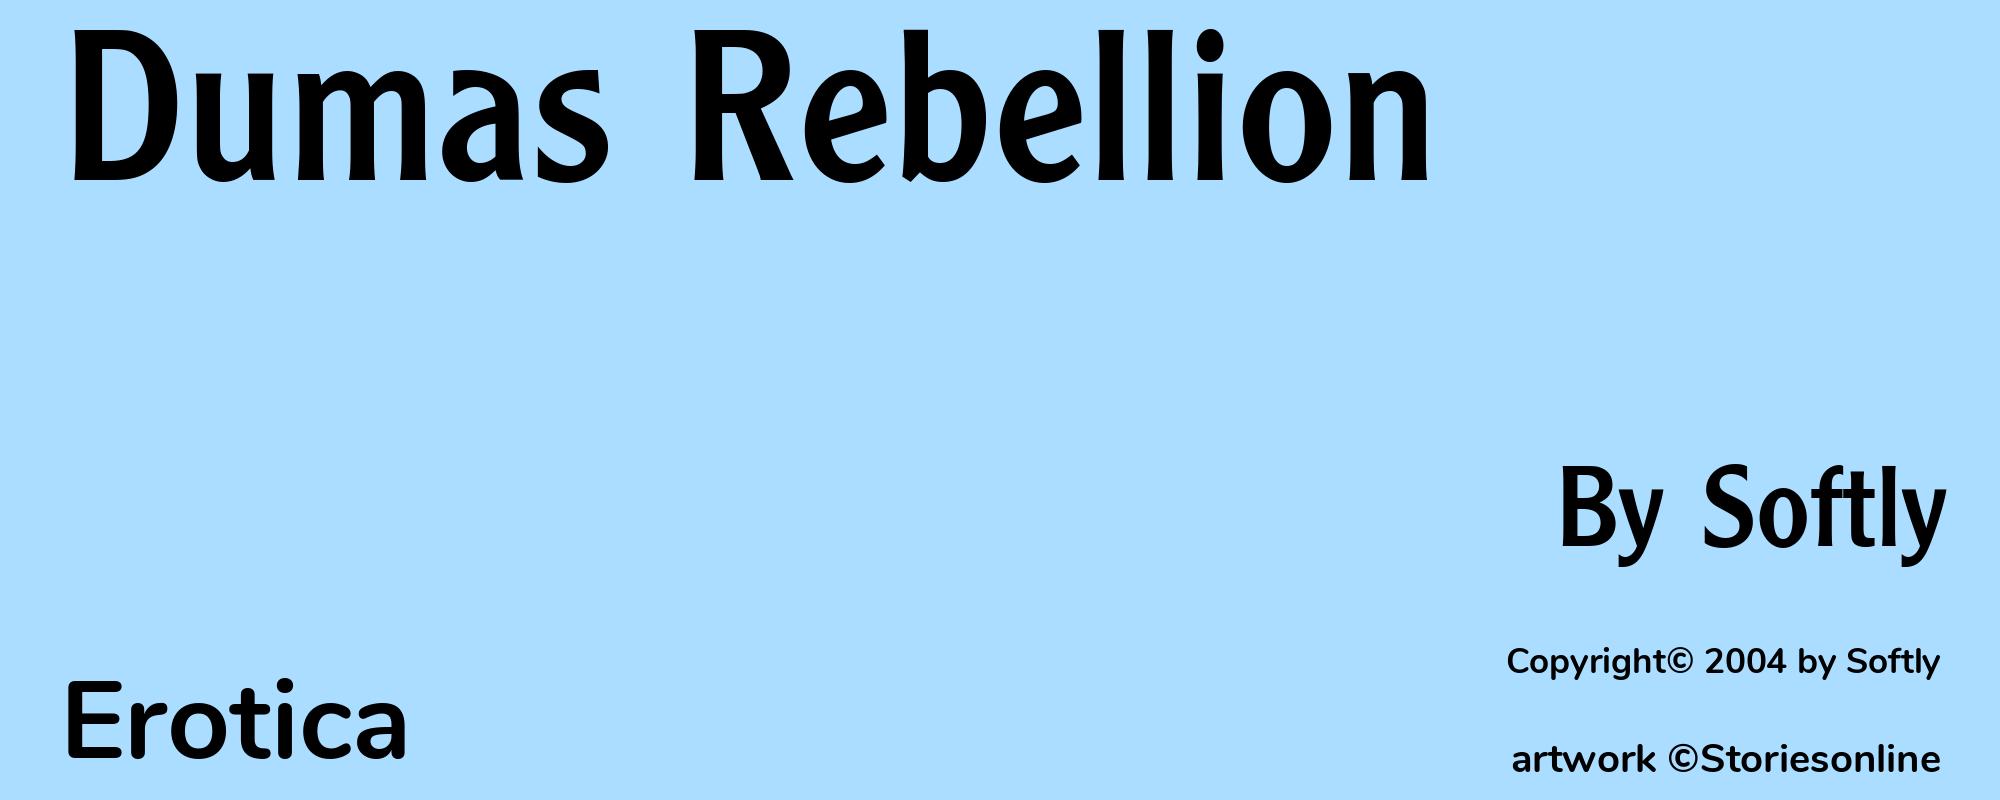 Dumas Rebellion - Cover